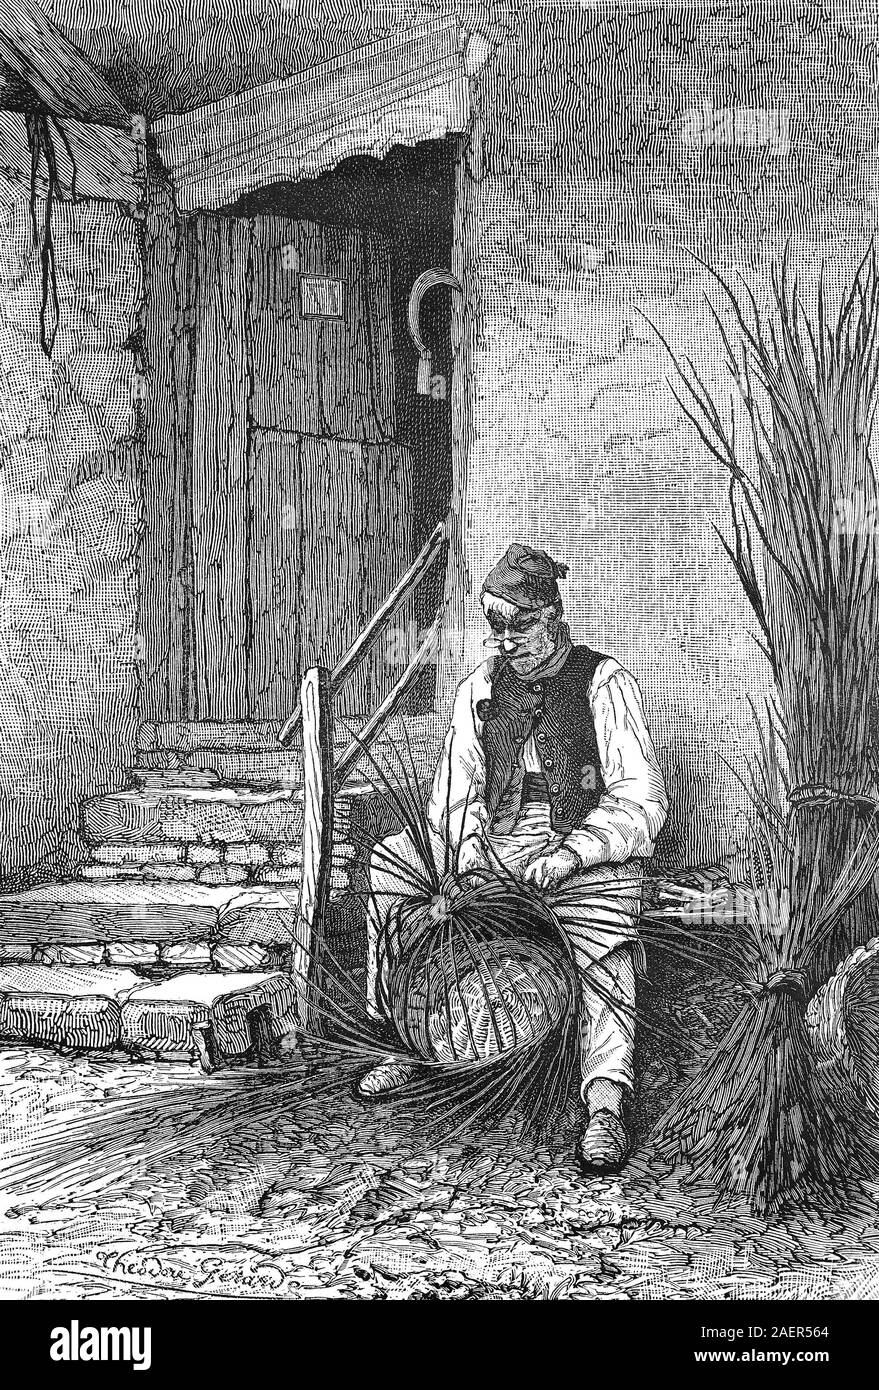 Wicker sitzt vor seinem Haus und verwelkt einen Weidenkorb/Korbflechter sitzt vor seinem Haus und Flechtet einen Weidenkorb, Reproduktion eines original 19. Jahrhundert drucken/Reproduktion von einems Originaldruck aus dem 19. Jahrhundert Stockfoto